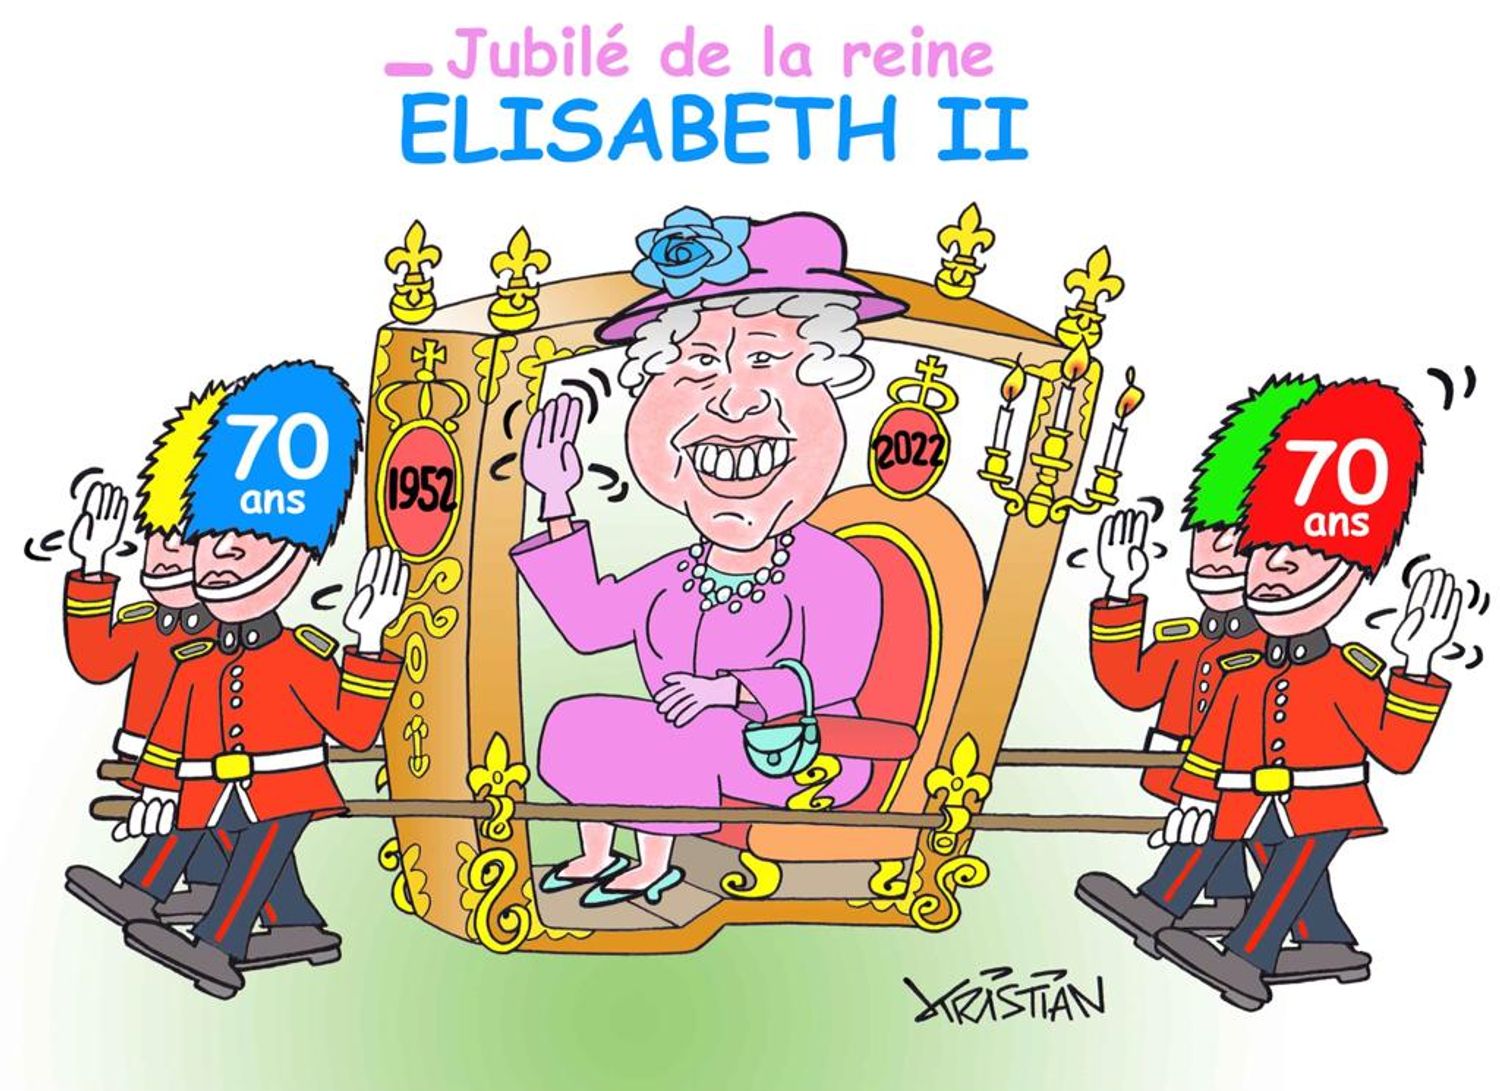 2/06/22 : 70 ans de règne et un jubilé de platine aujourd’hui pour la Reine d’Angleterre